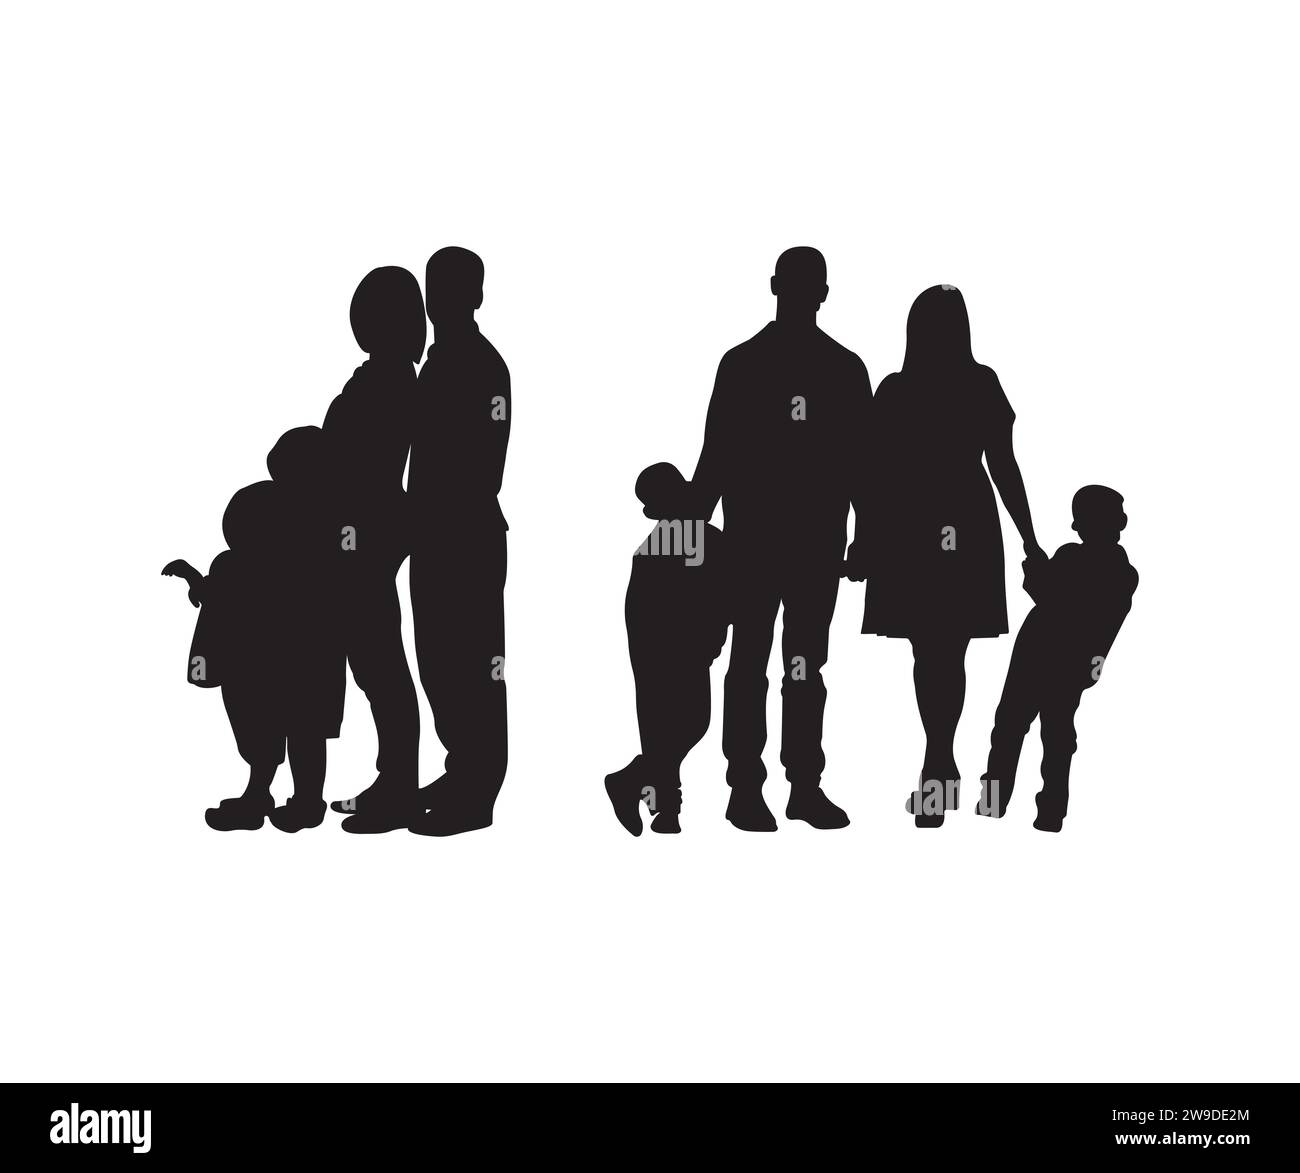 Family Vector, Family SVG Bundle, People Vector, Family silhouette, Family Love, padre e figli, vettore famiglia, pacchetto famiglia Illustrazione Vettoriale